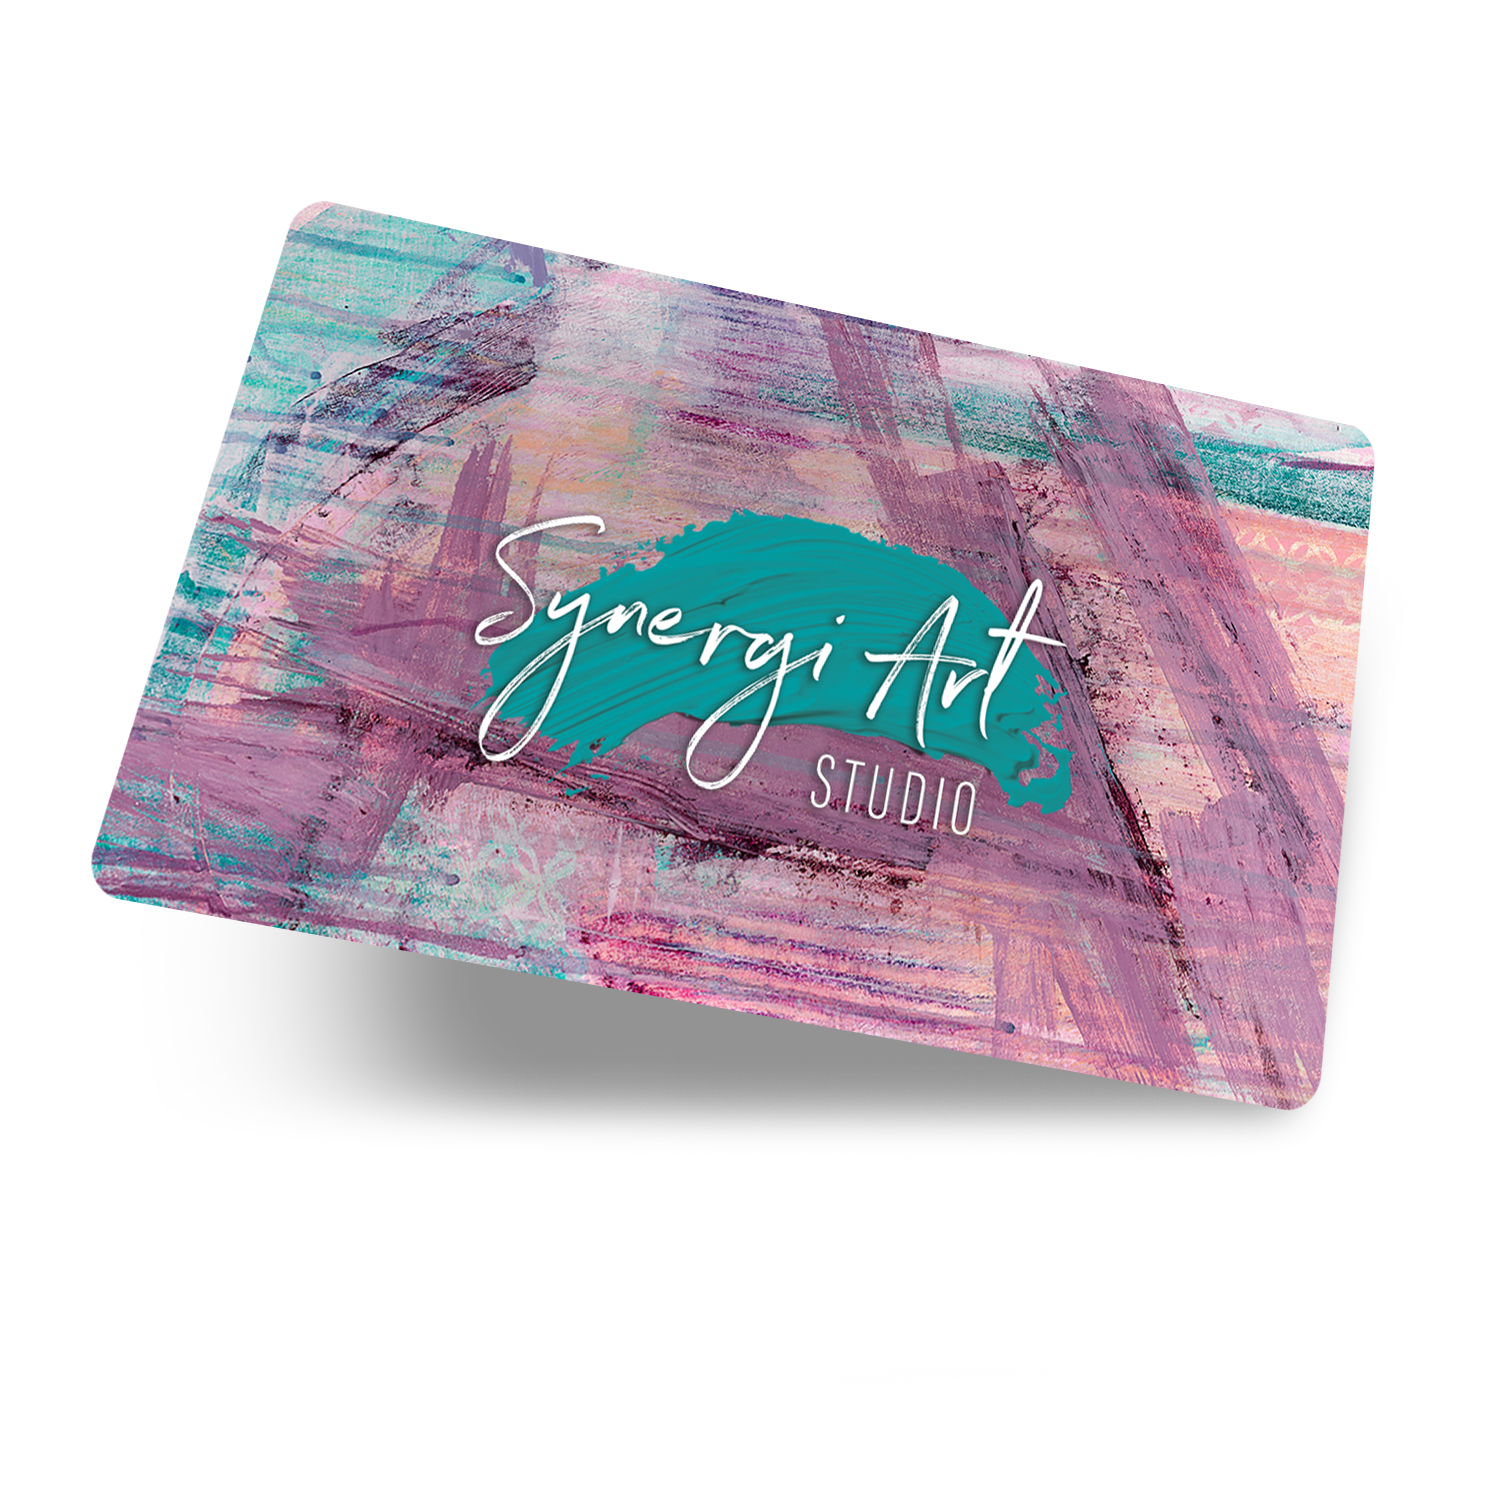 Synergi Art Studio Gift Card